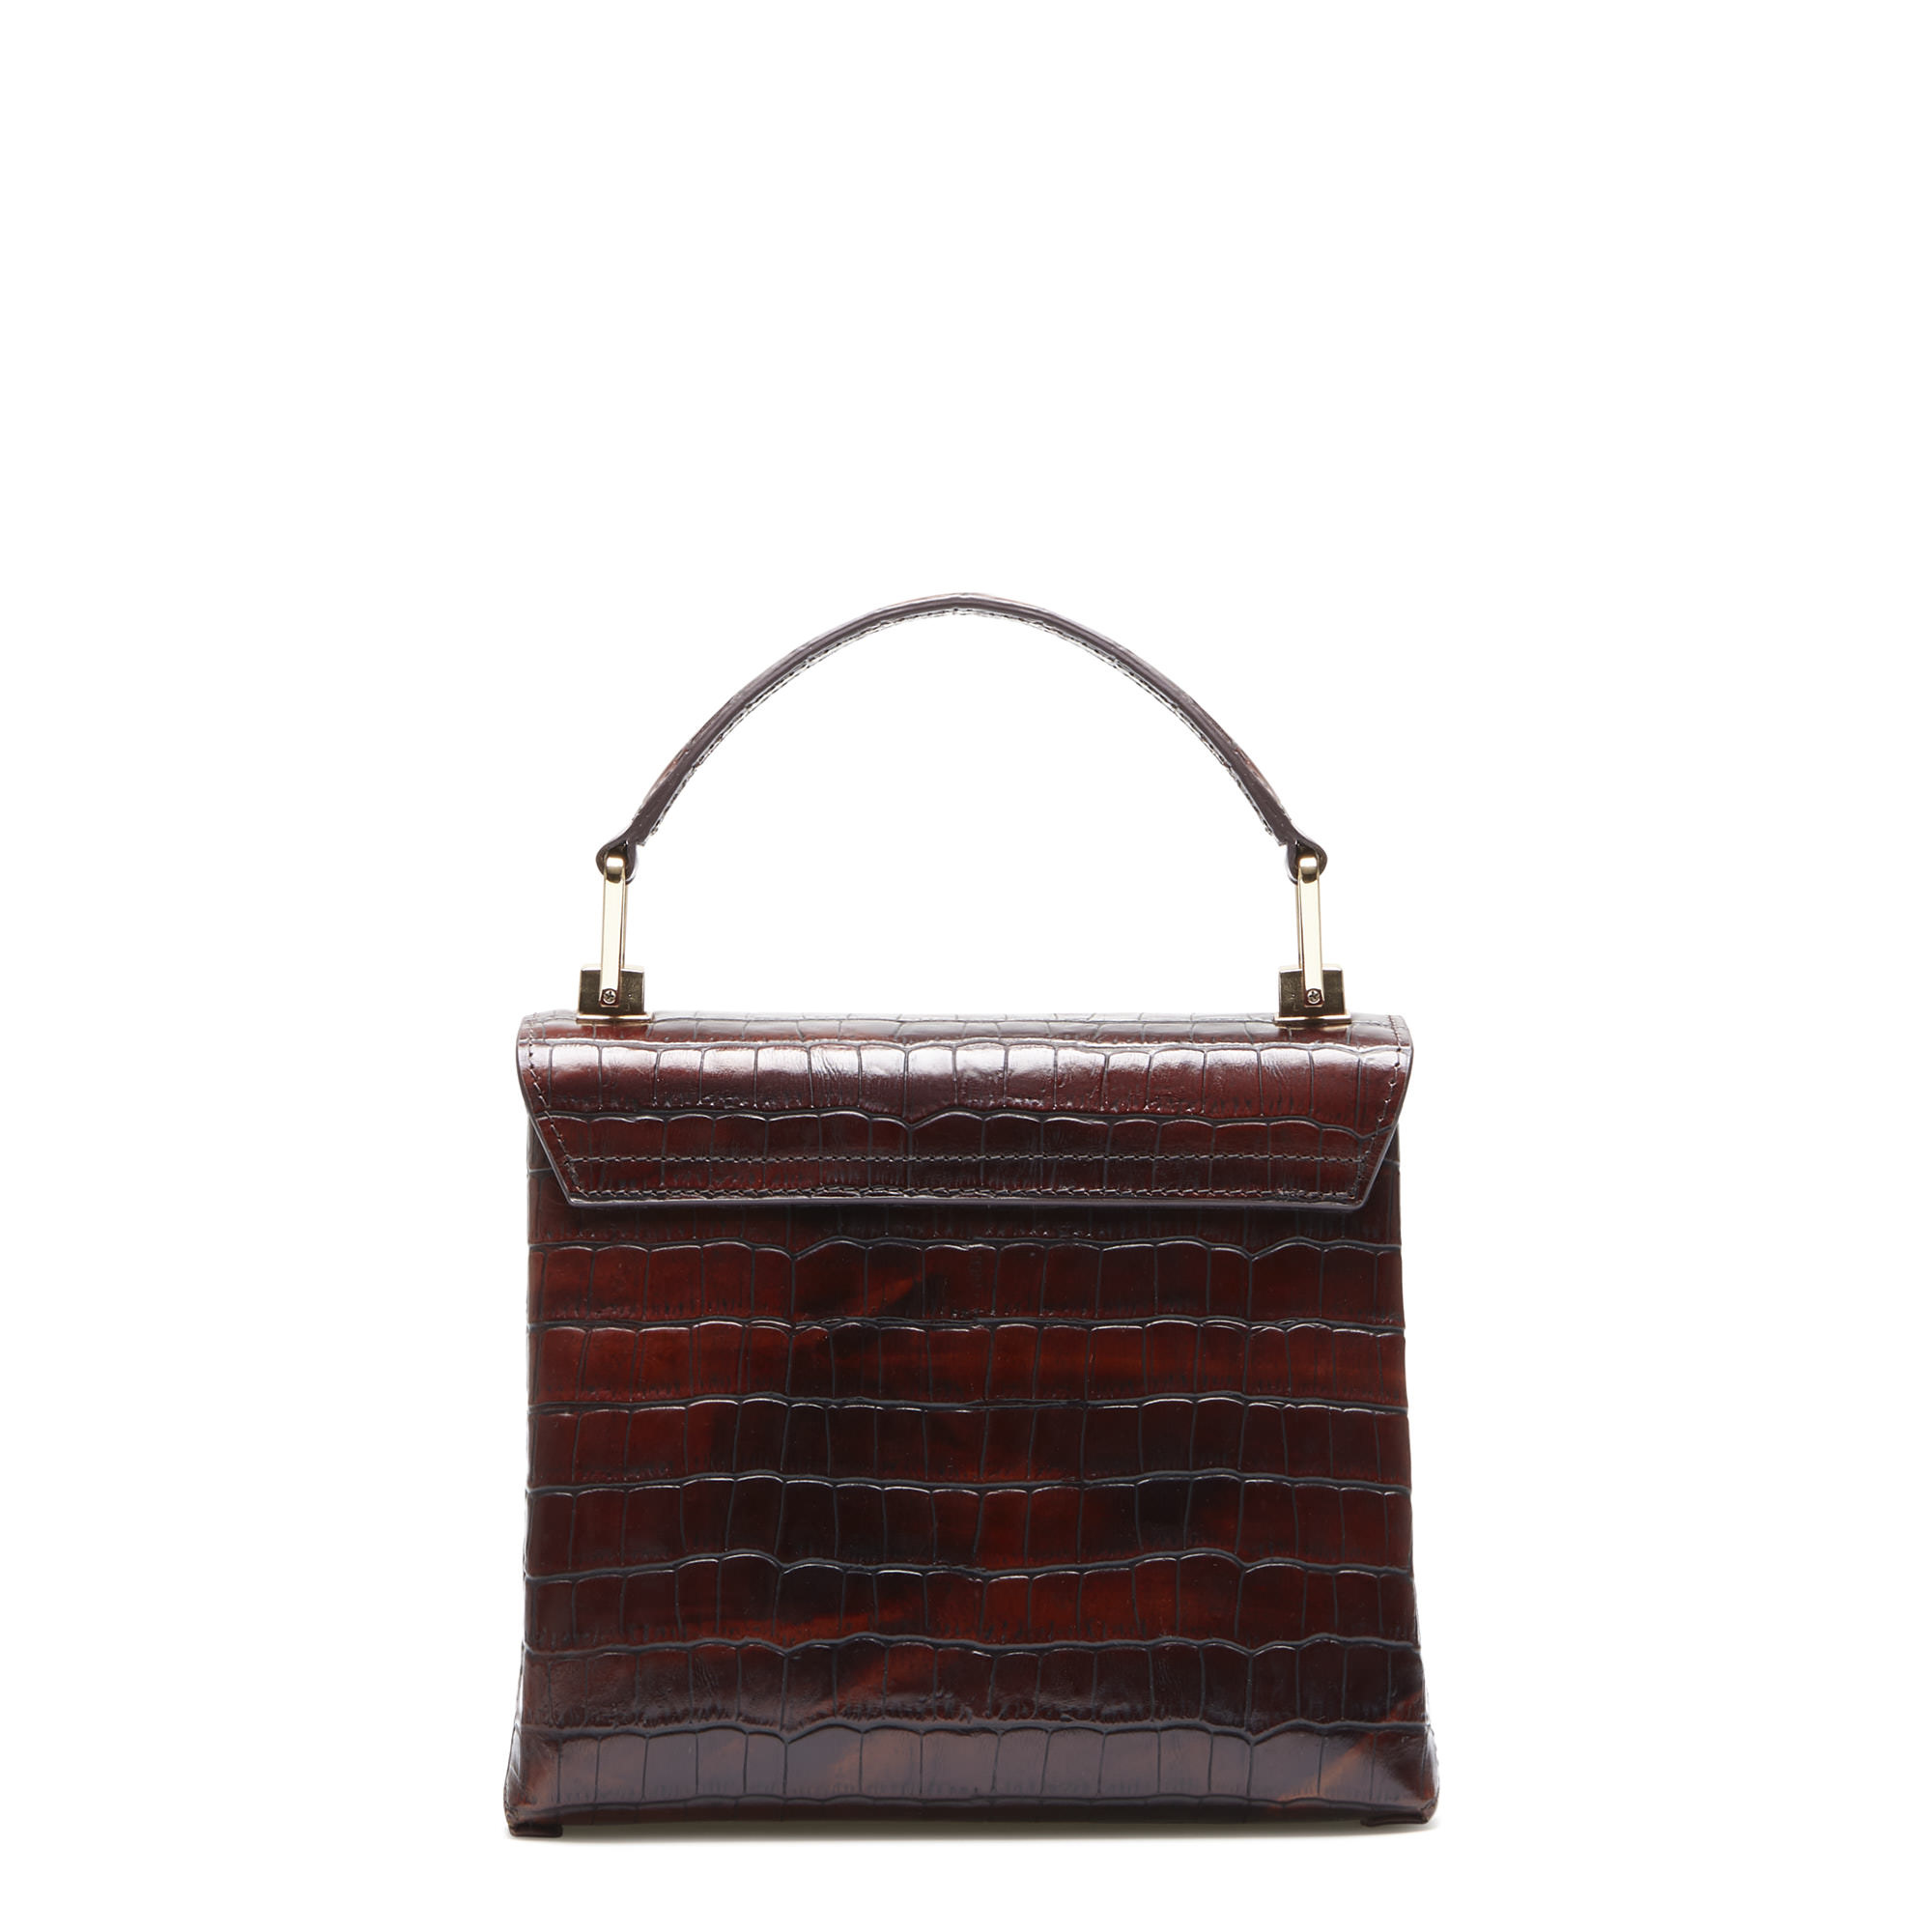 Isabel Bernard Femme Forte Heline croco brown calfskin leather handbag